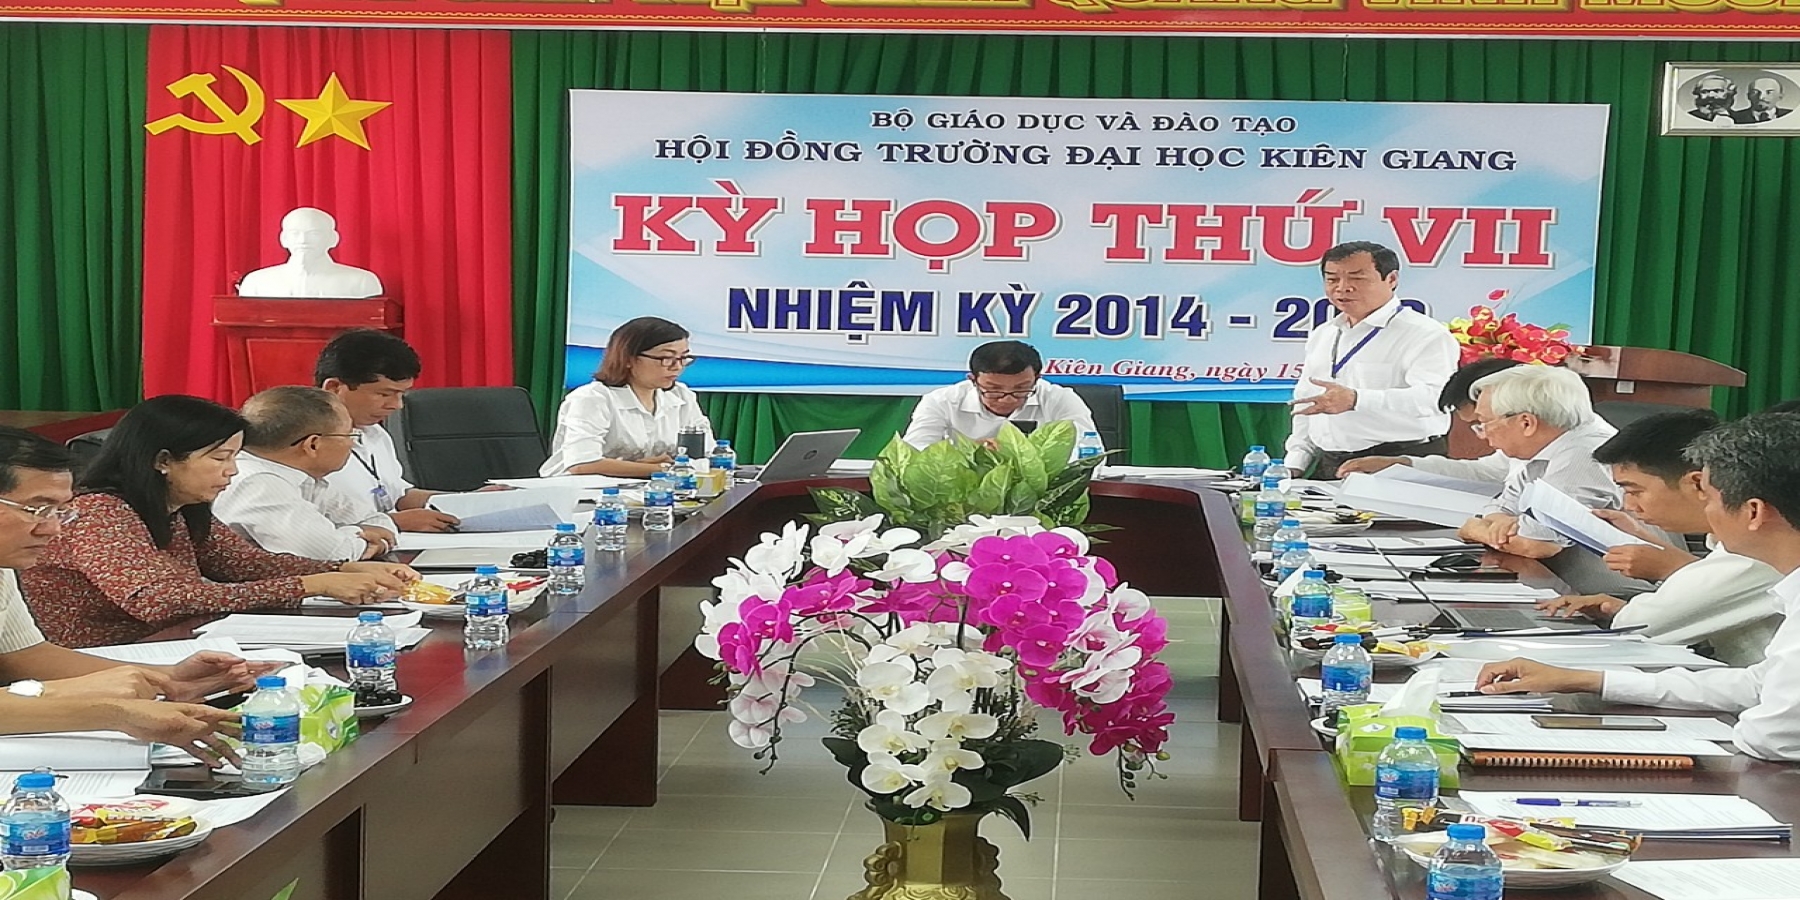 Kỳ họp thứ VII nhiệm kỳ 2014 - 2019, Hội Đồng Trường Đại học Kiên Giang